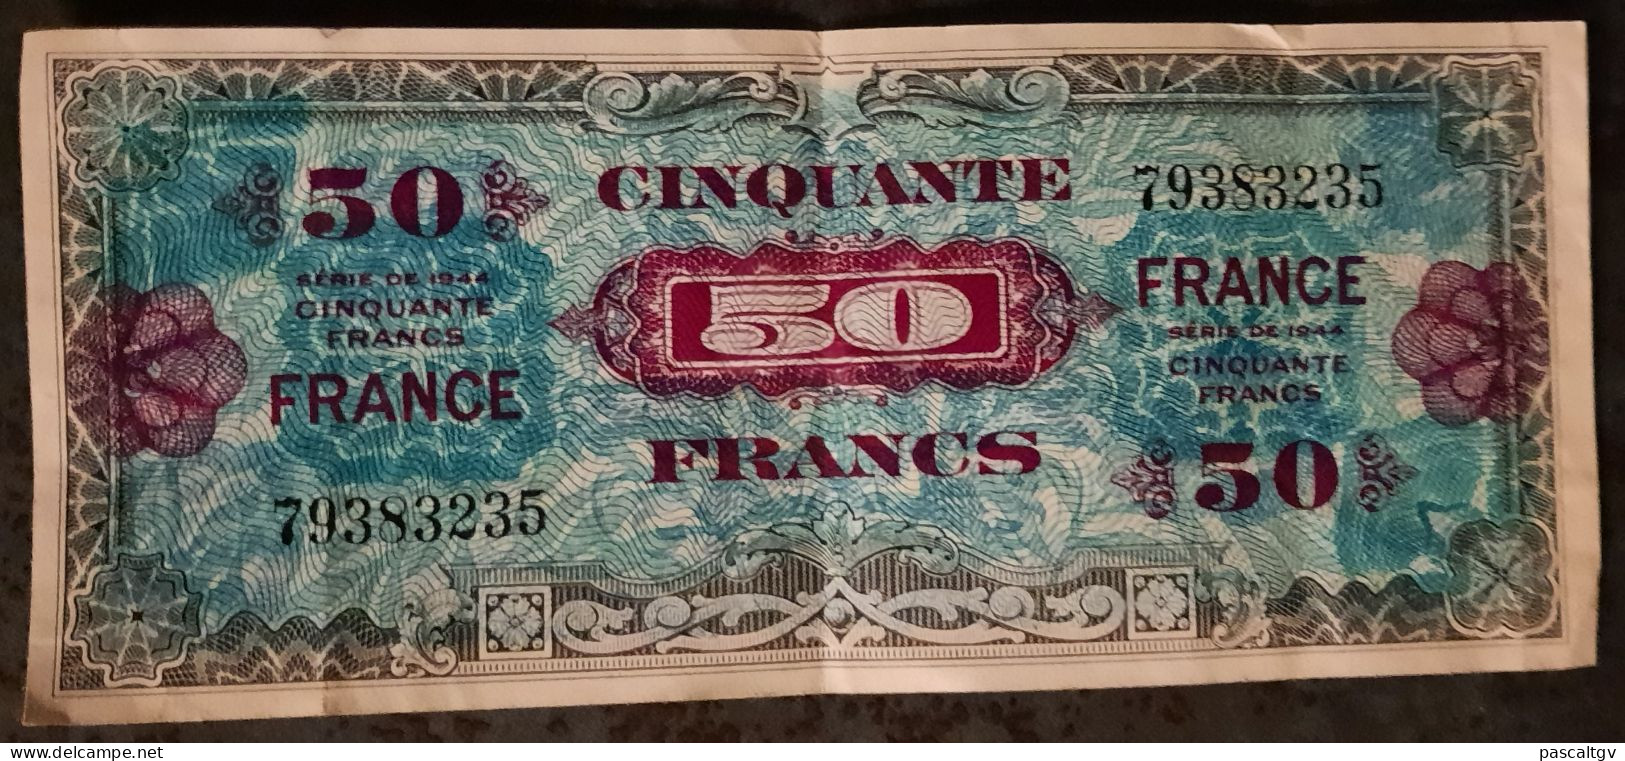 50 FRANCS - ** VERSO FRANCE - SERIE DE 1944 - N° 79383235 - Billet Du Débarquement ** - 1945 Verso France